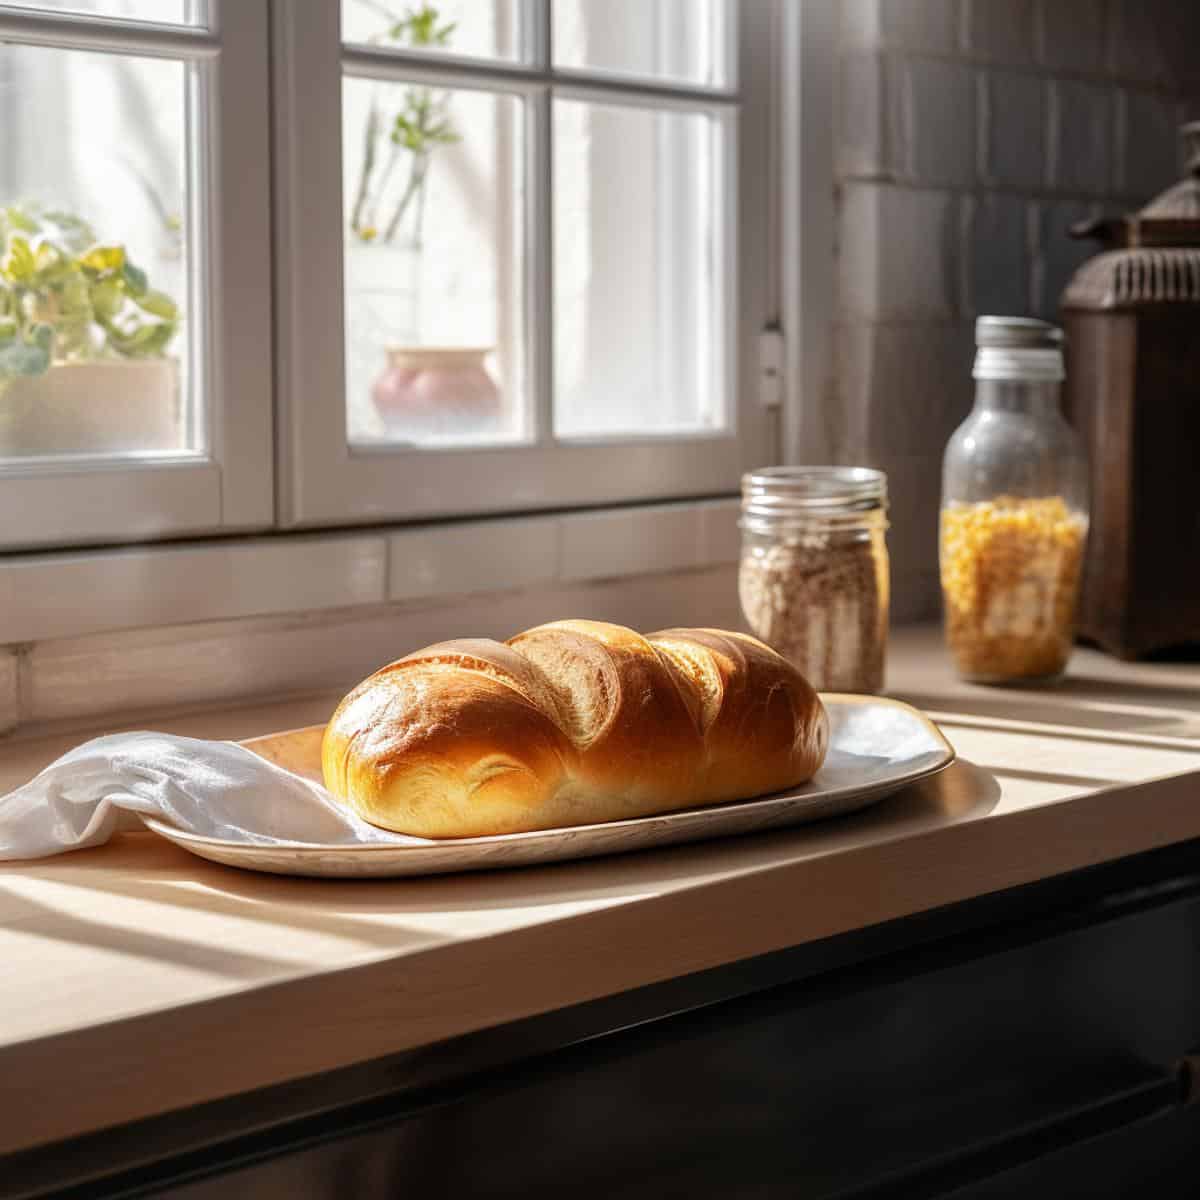 Vienna Bread on a kitchen counter